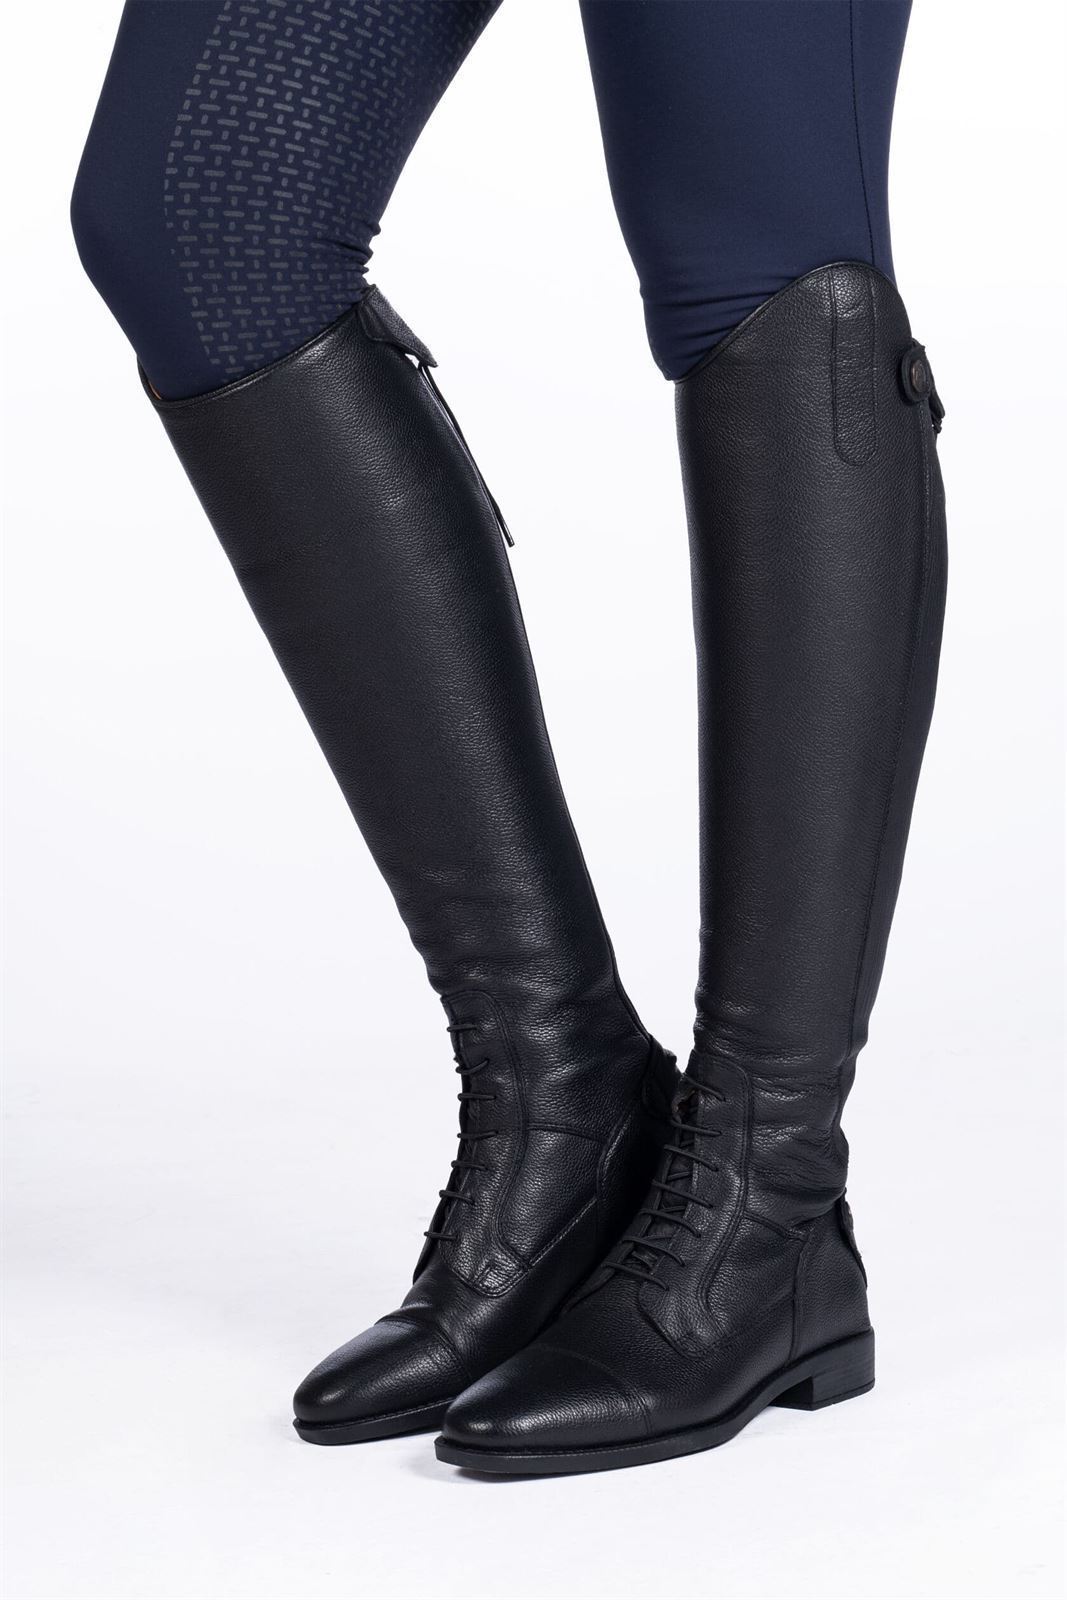 Botas de cuero unisex HKM, Titanium Style, color negro - Imagen 1